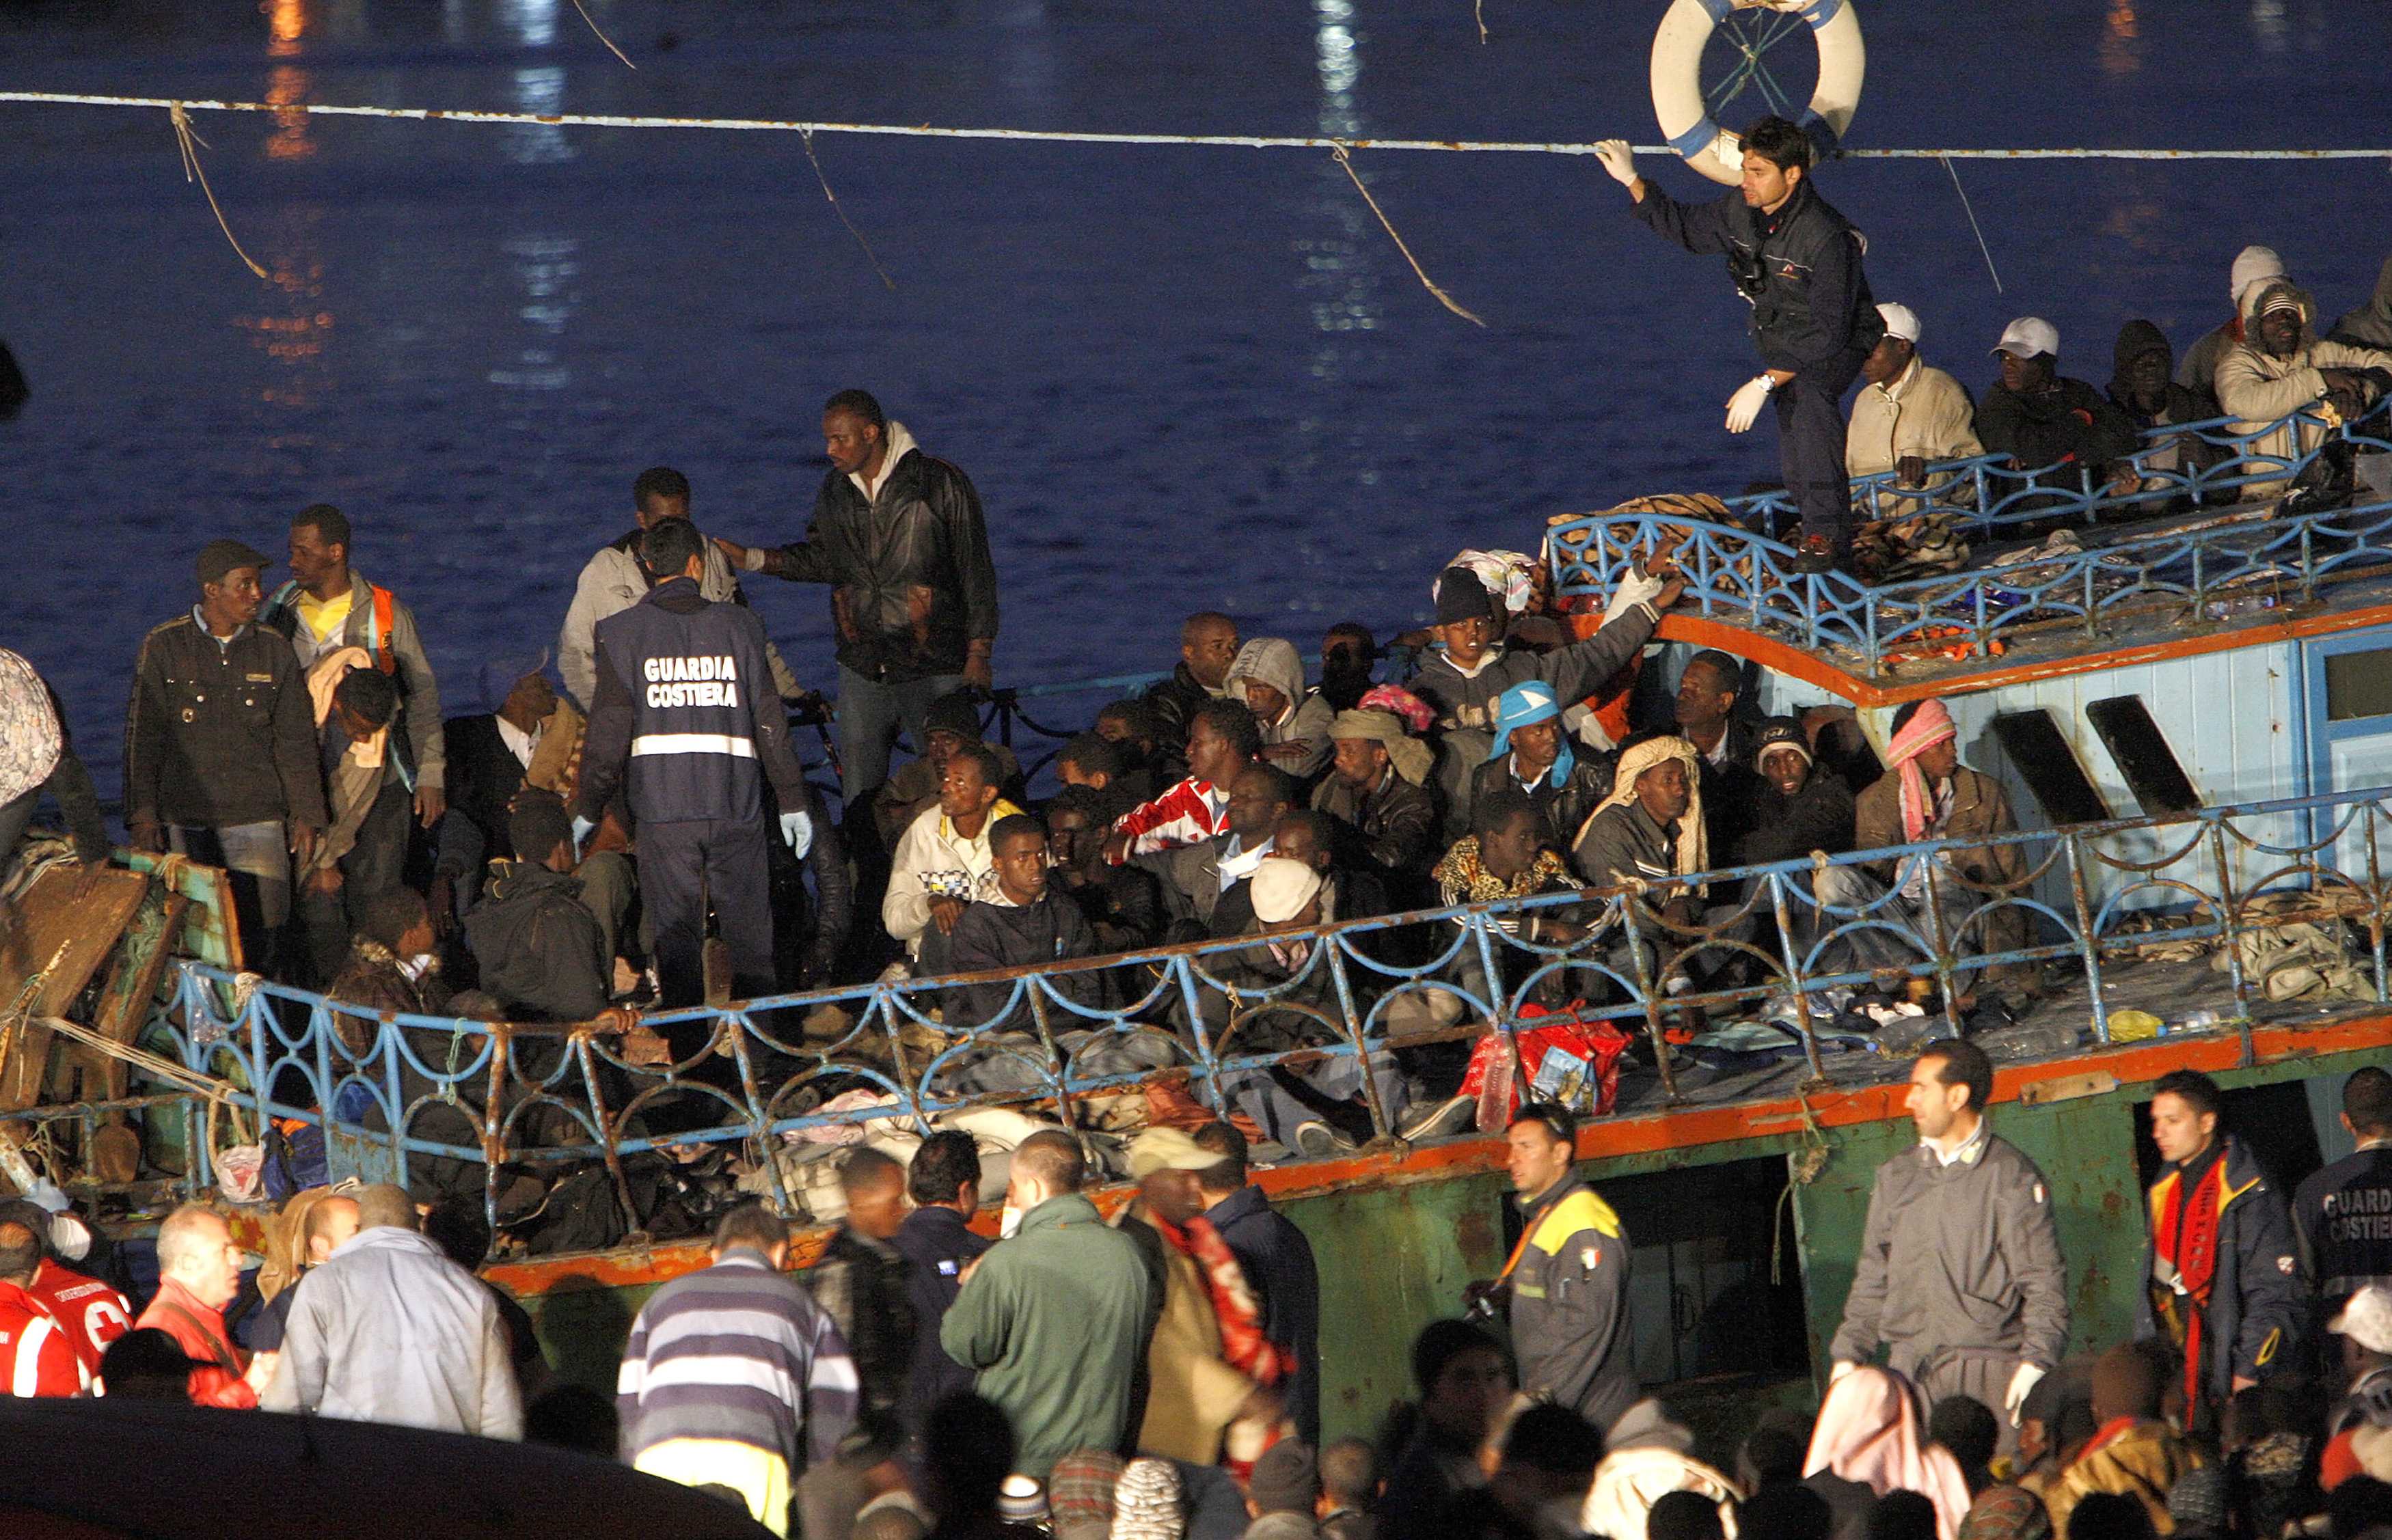 Ευρωκαταδίκη της Ιταλίας για κράτηση και απέλαση προσφύγων το 2011